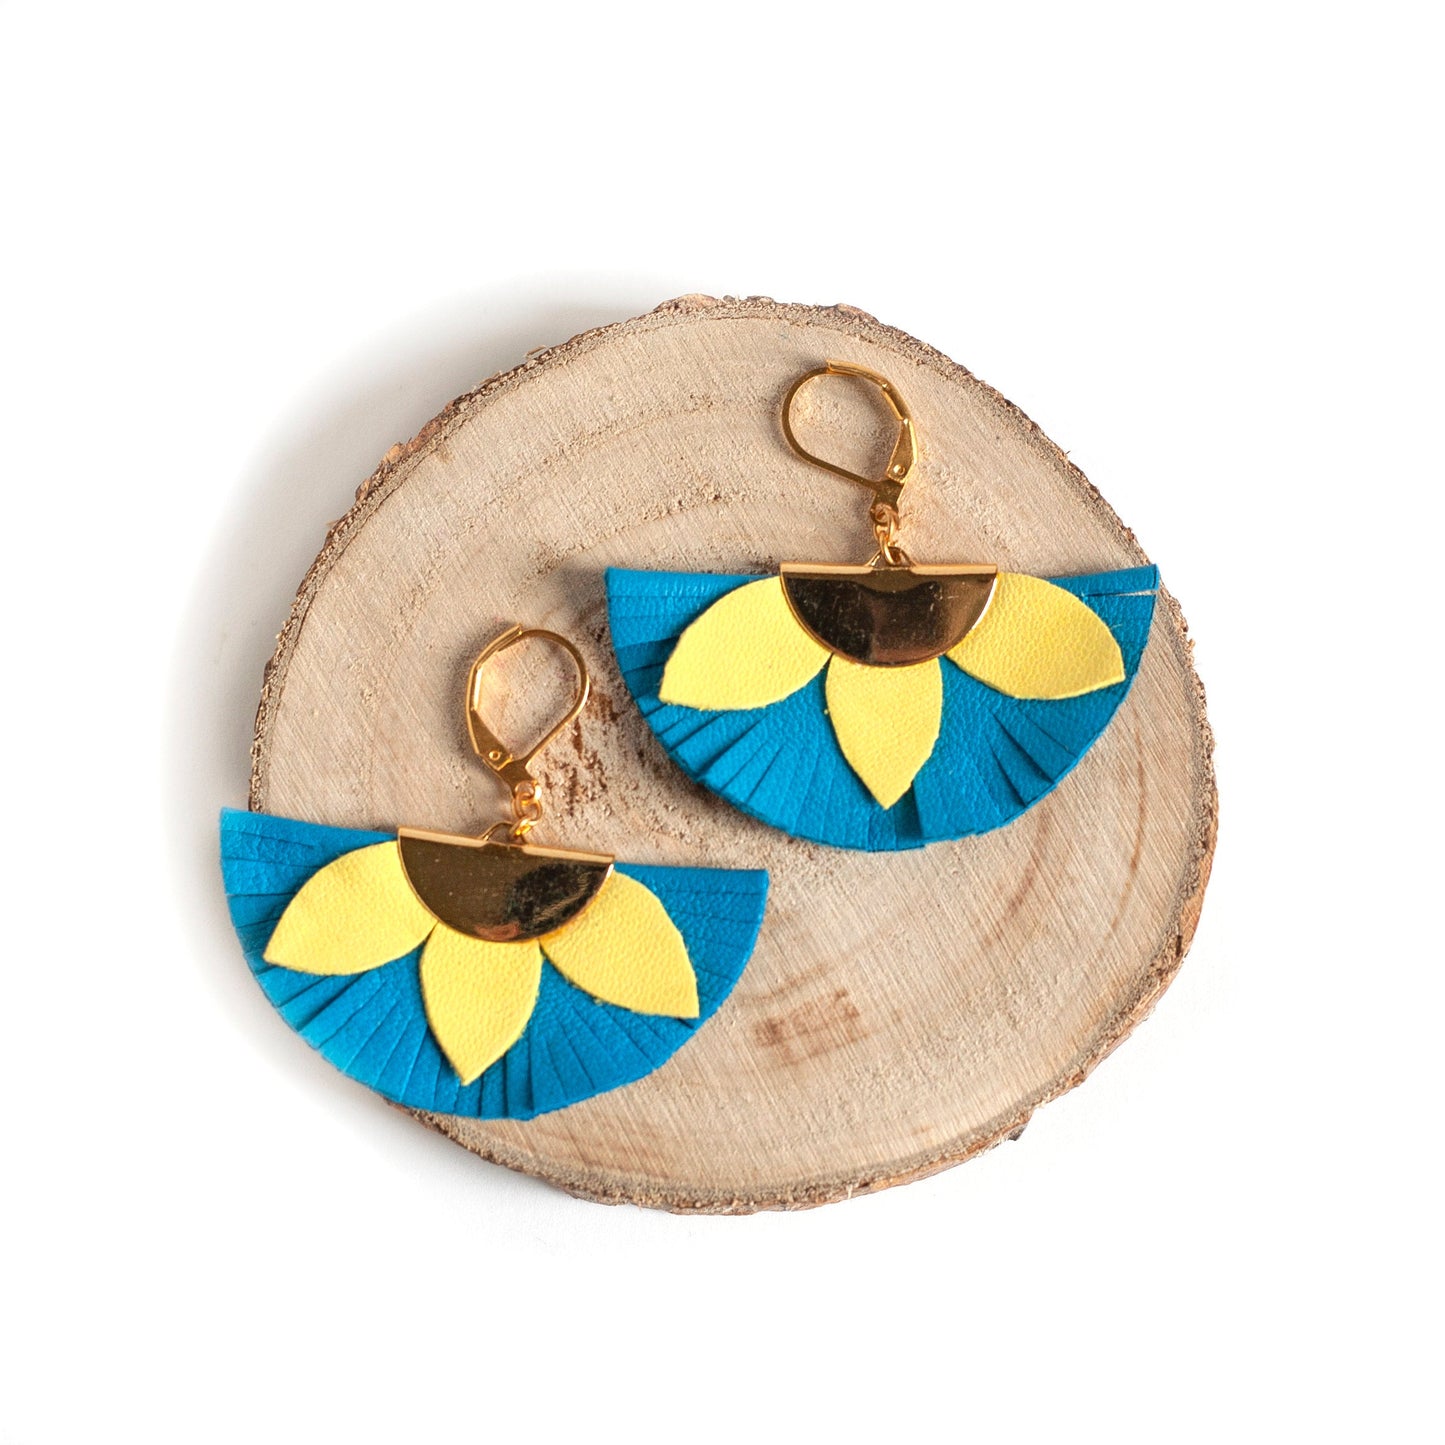 Blue and yellow fan earrings